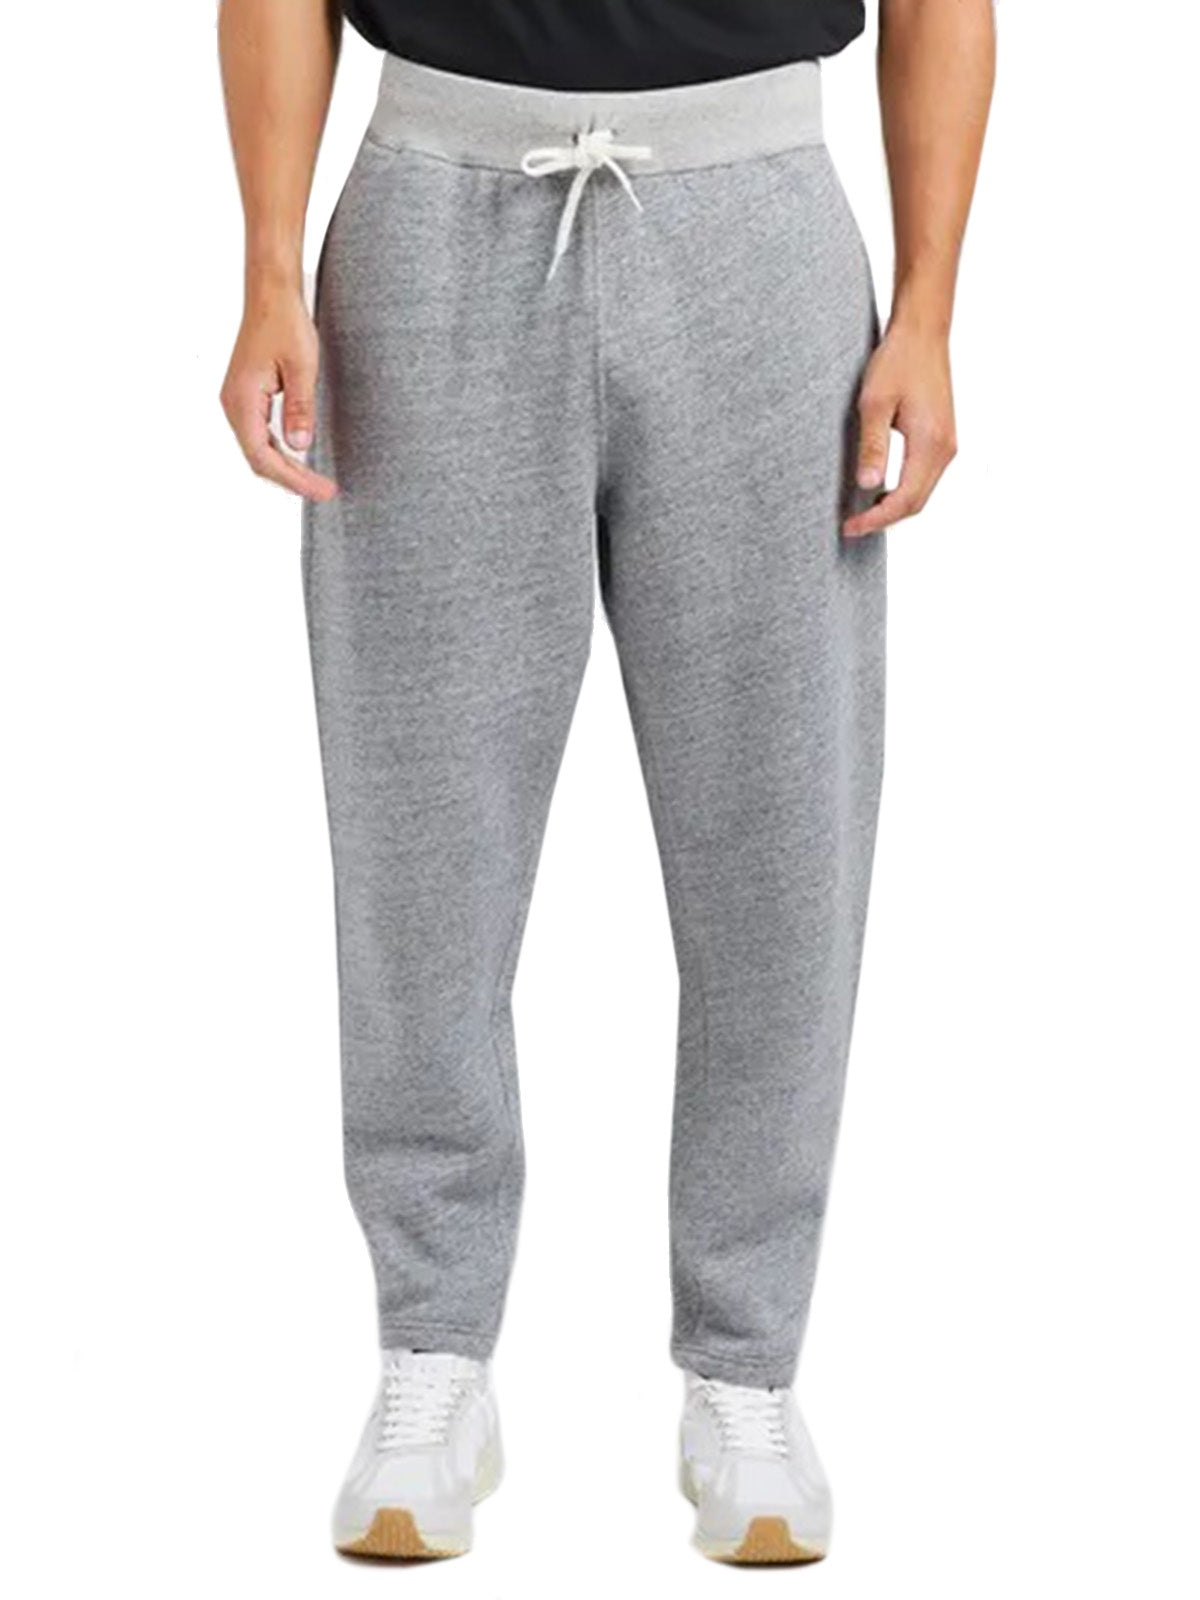 Pantaloni Donna Ralph Lauren - Prl Fleece Athletic Ankle Pant - Grigio